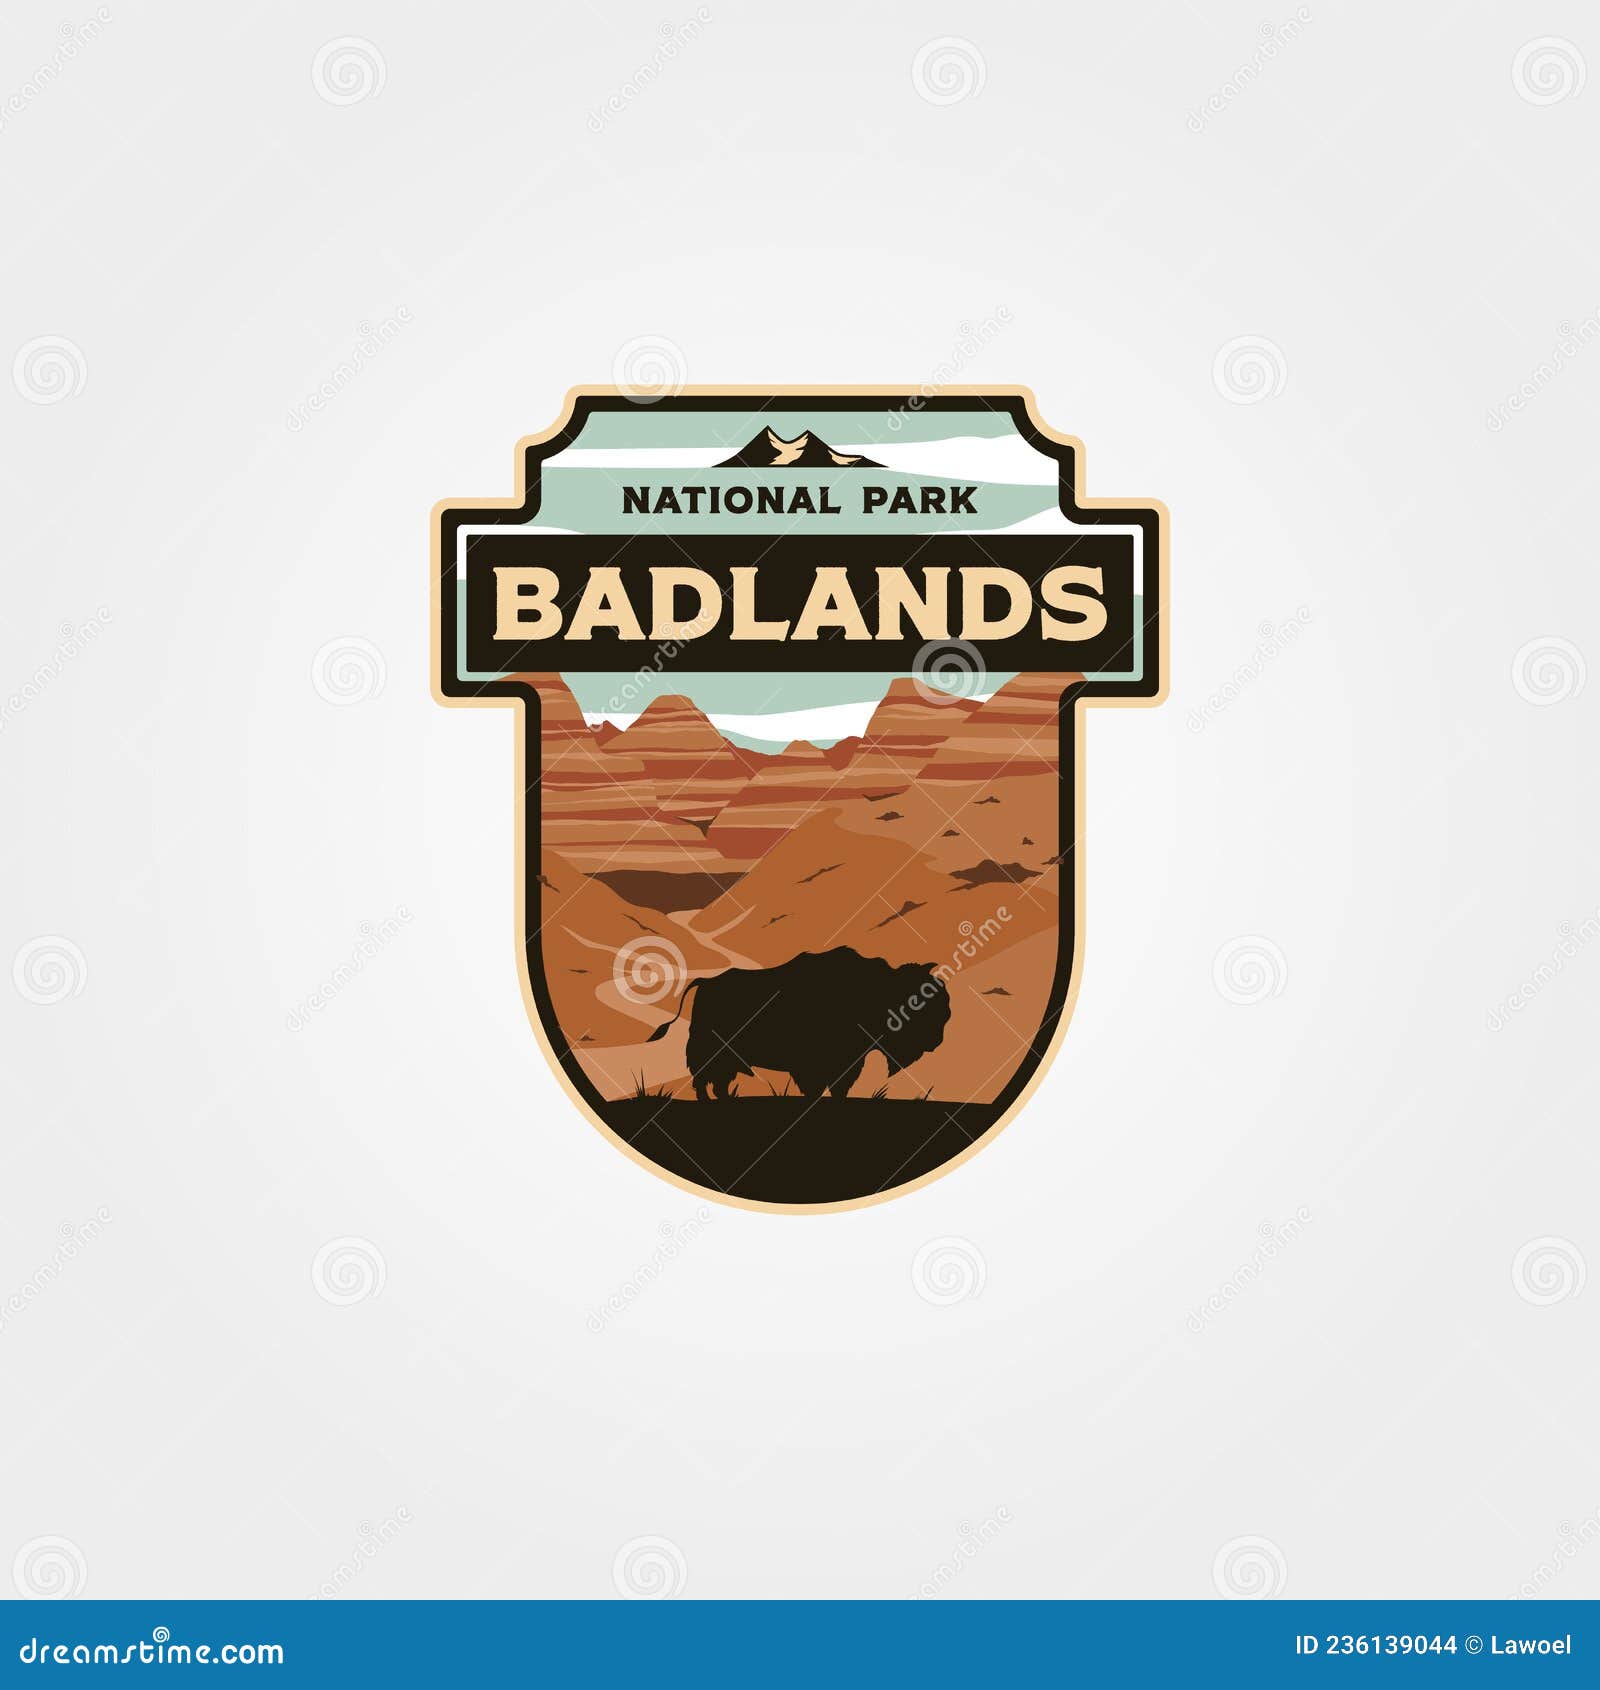 badlands national park logo vintage  patch  , travel badge 